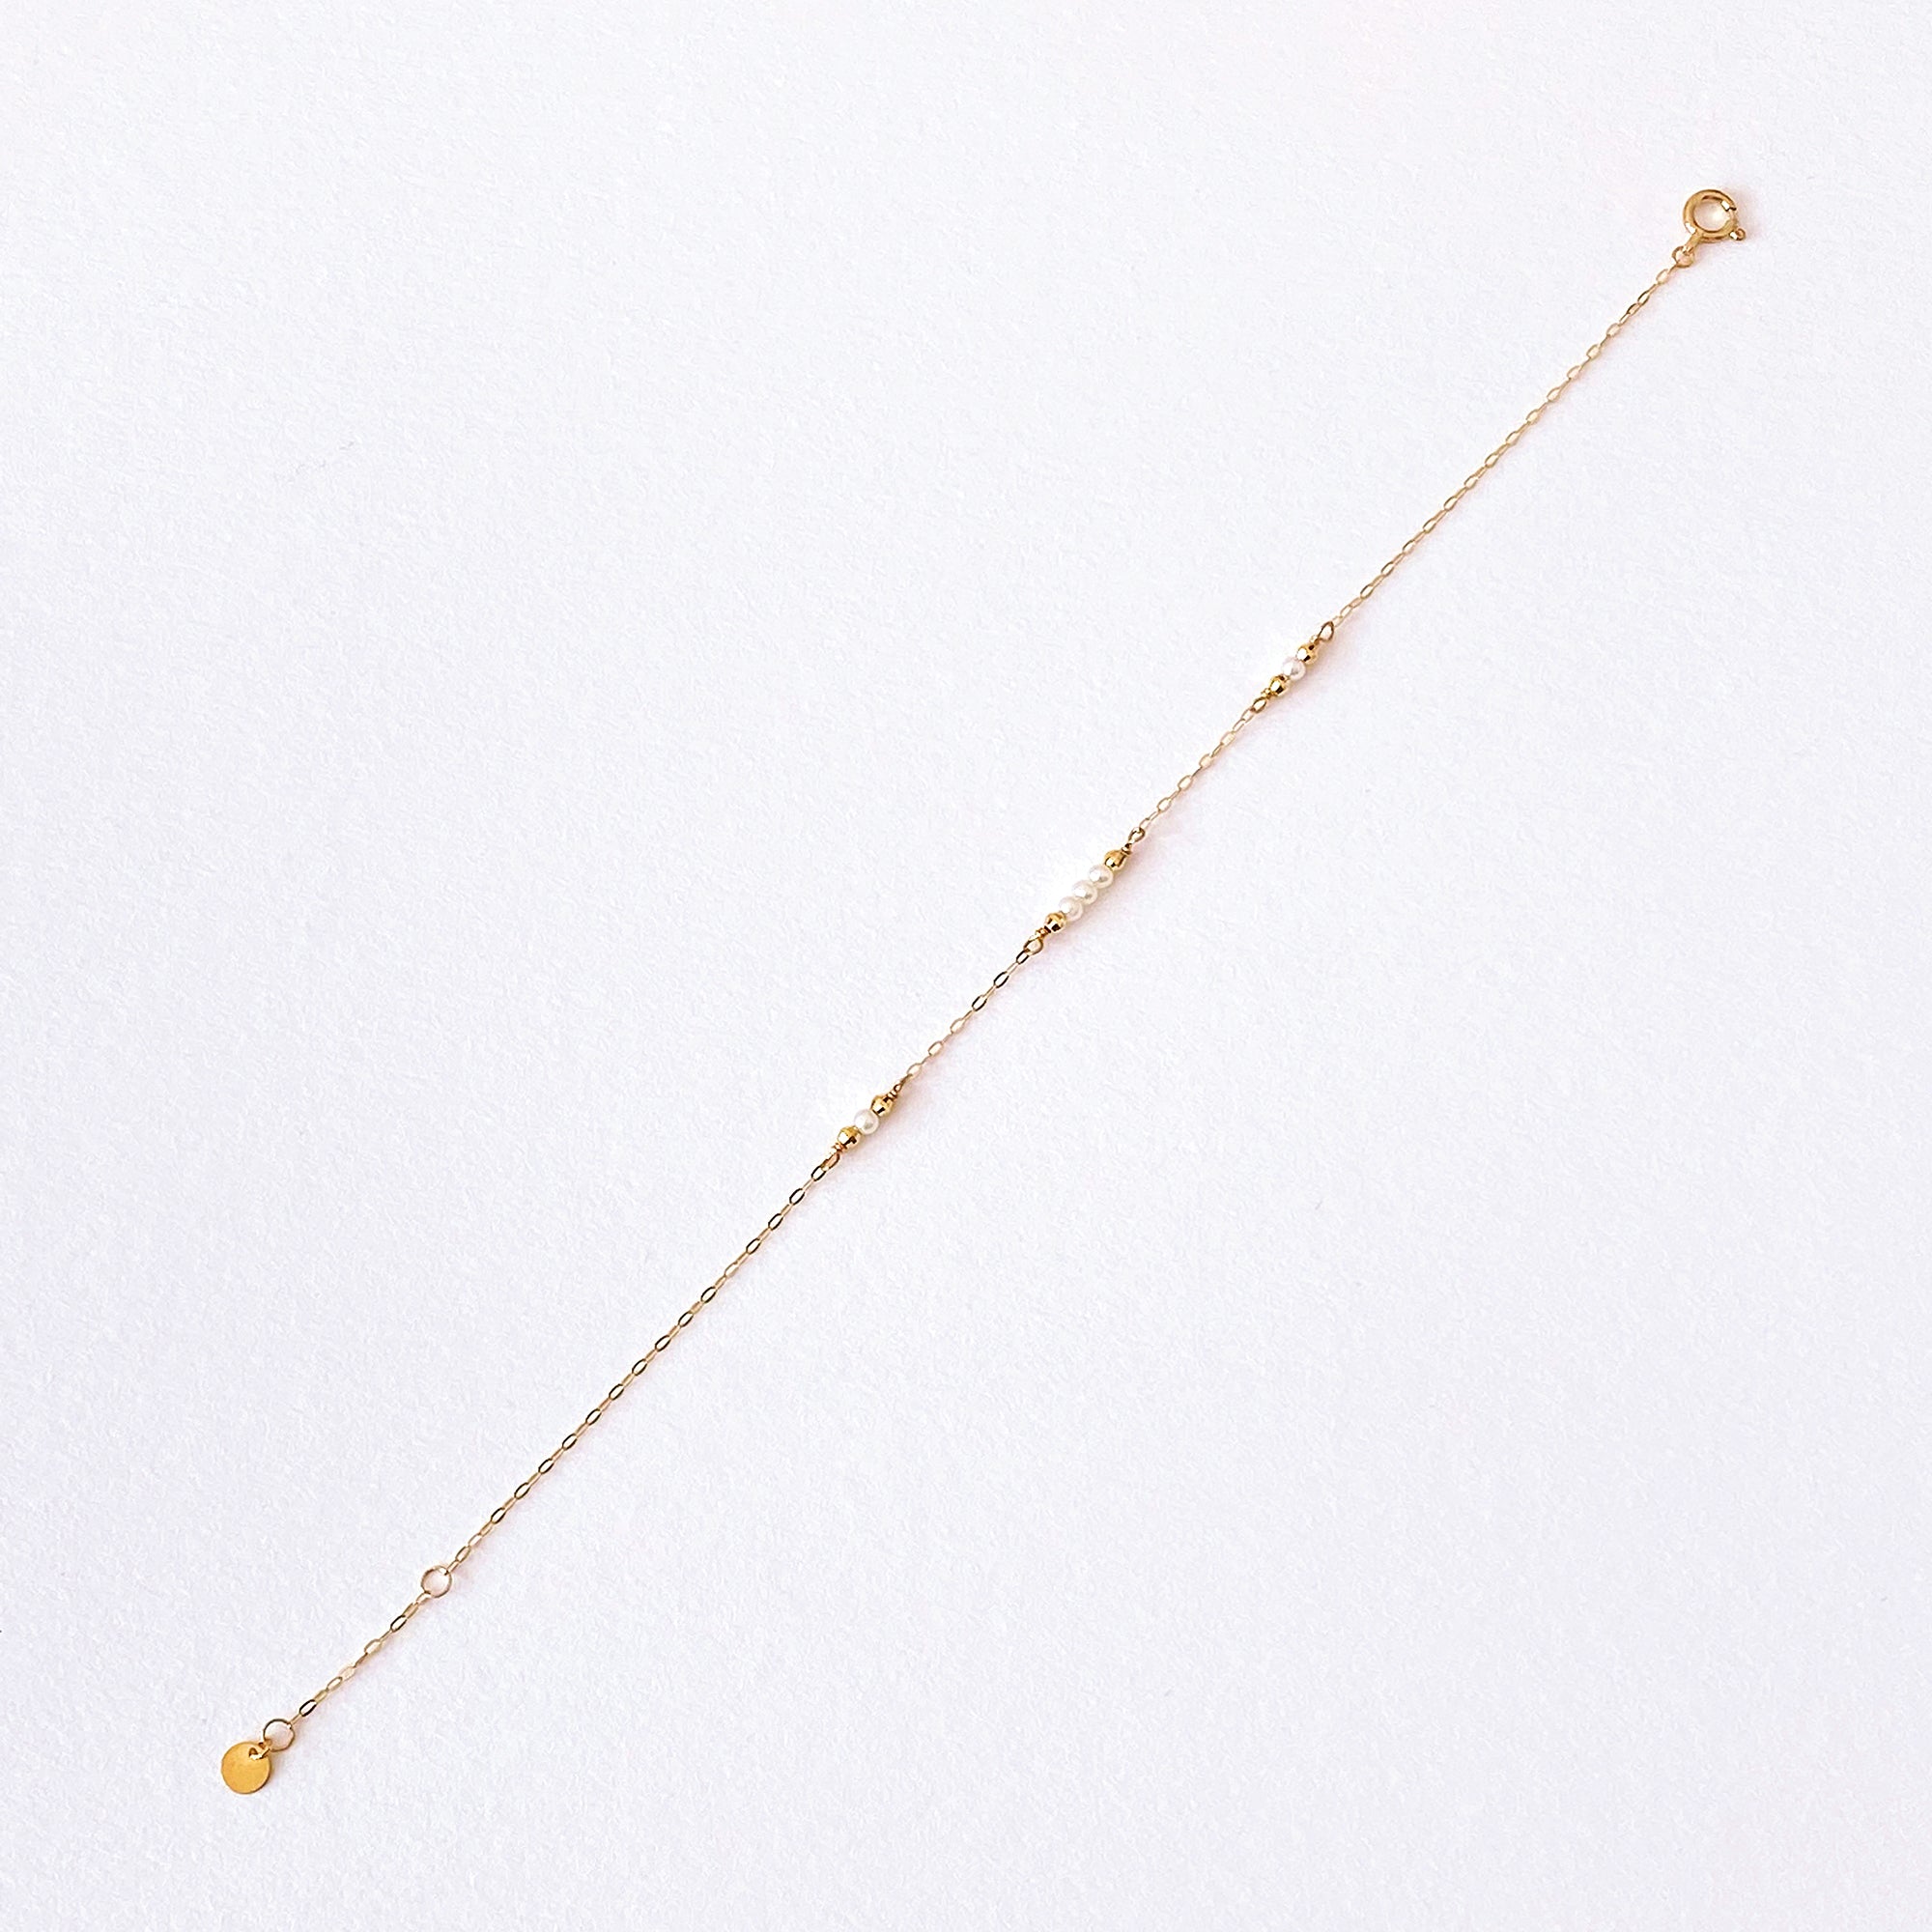 Sachi Pearl Bracelet (K10 Gold)